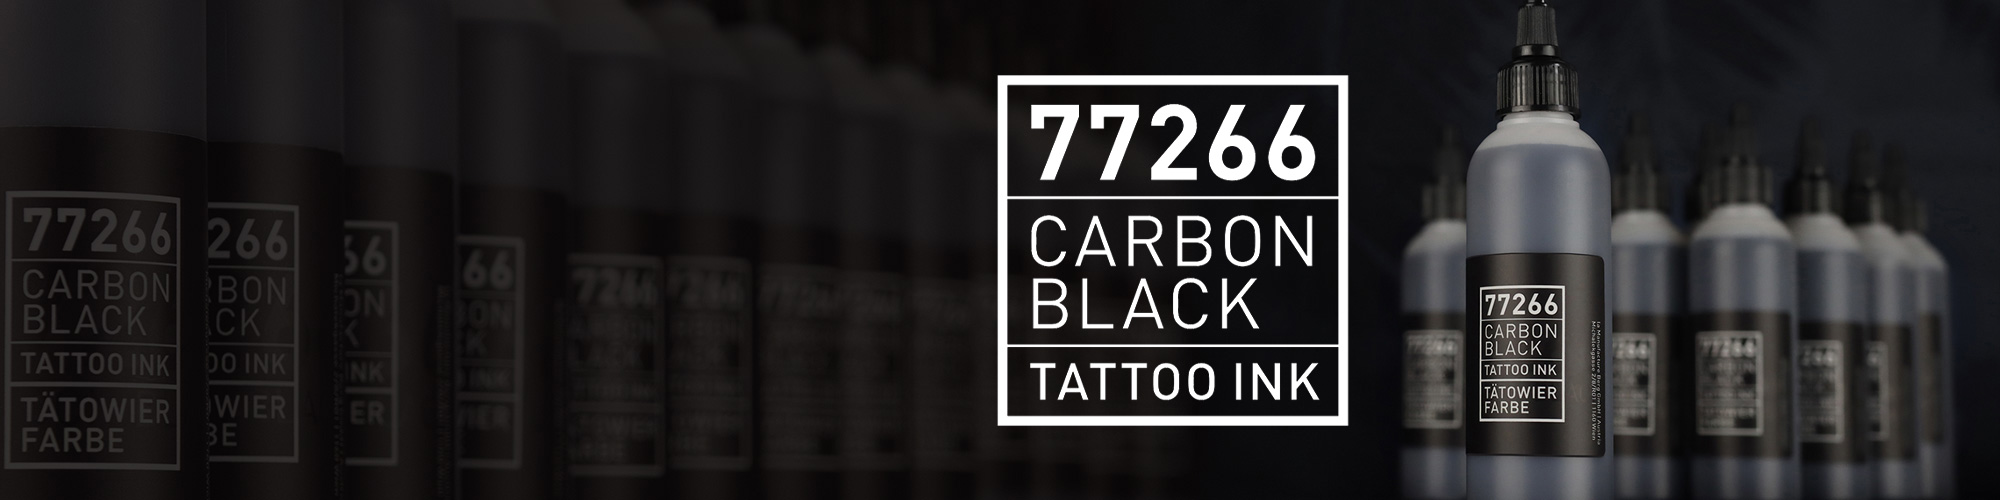 CARBON BLACK IS BACK